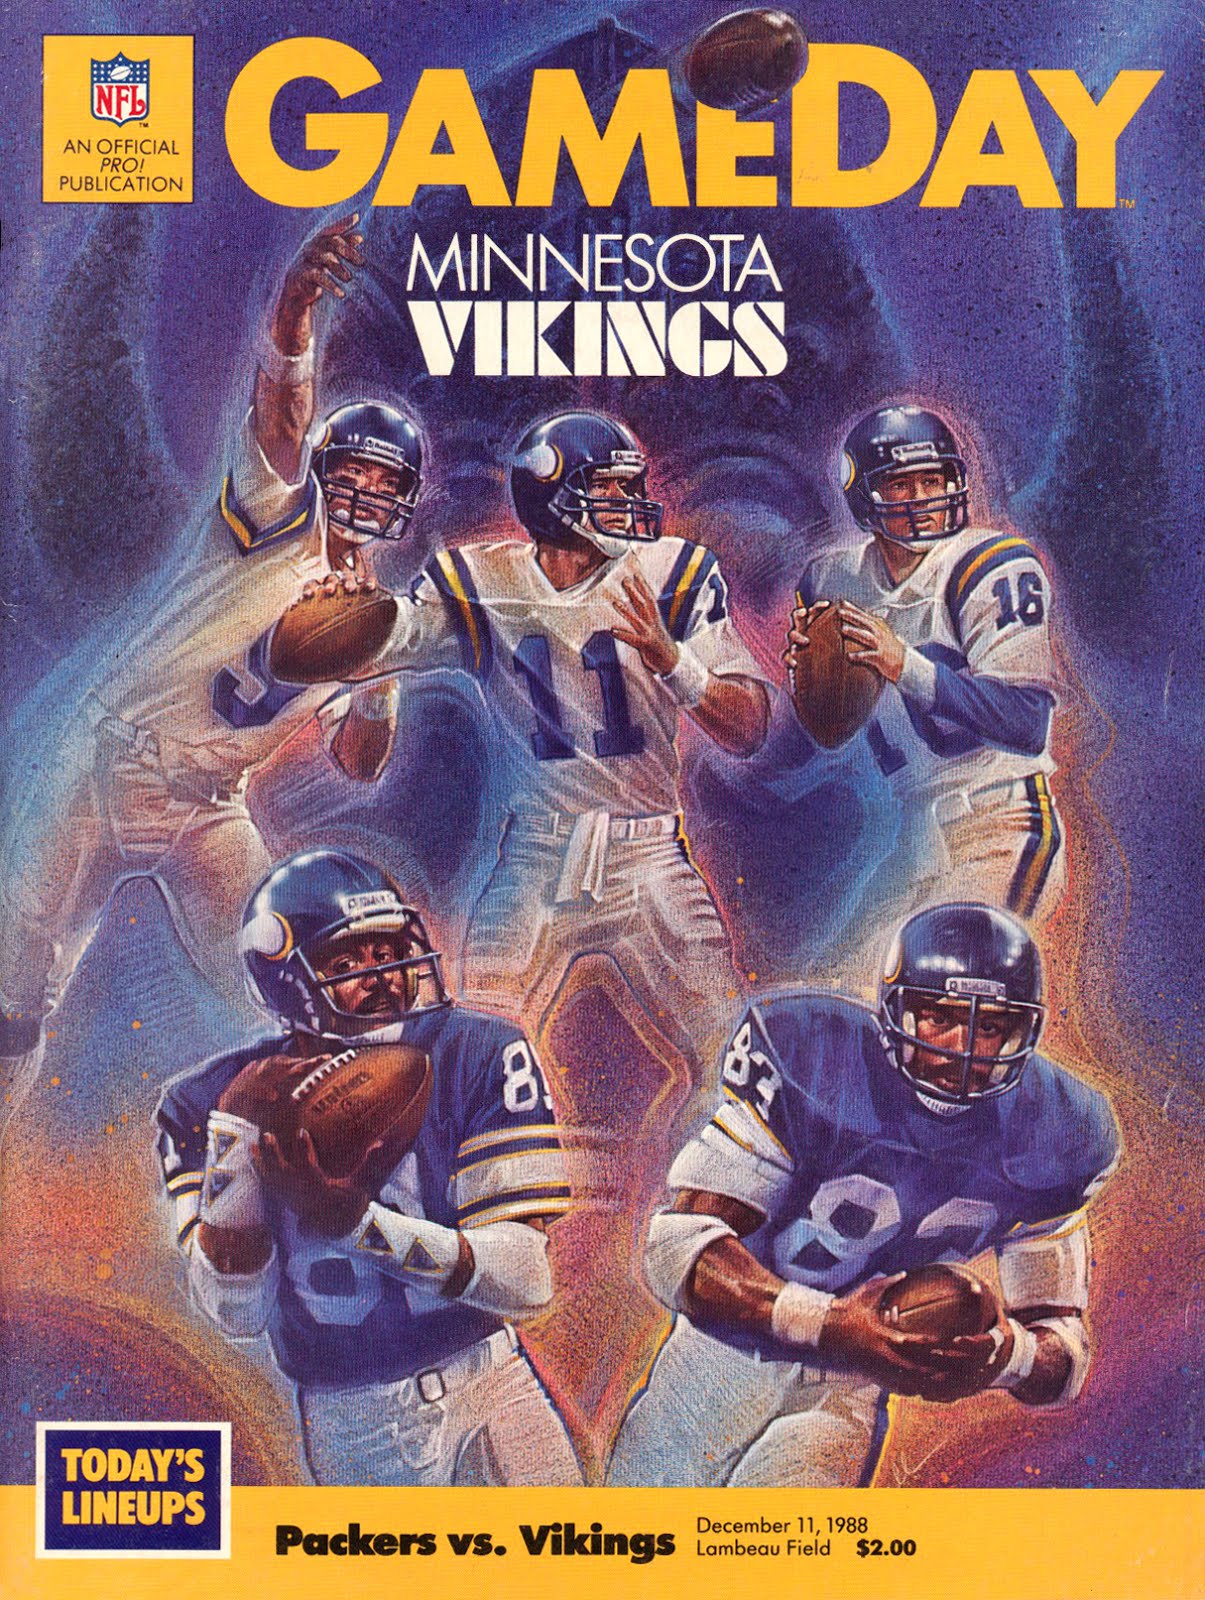 PACKERVILLE, U.S.A.: Packers vs. Vikings — December 11, 1988